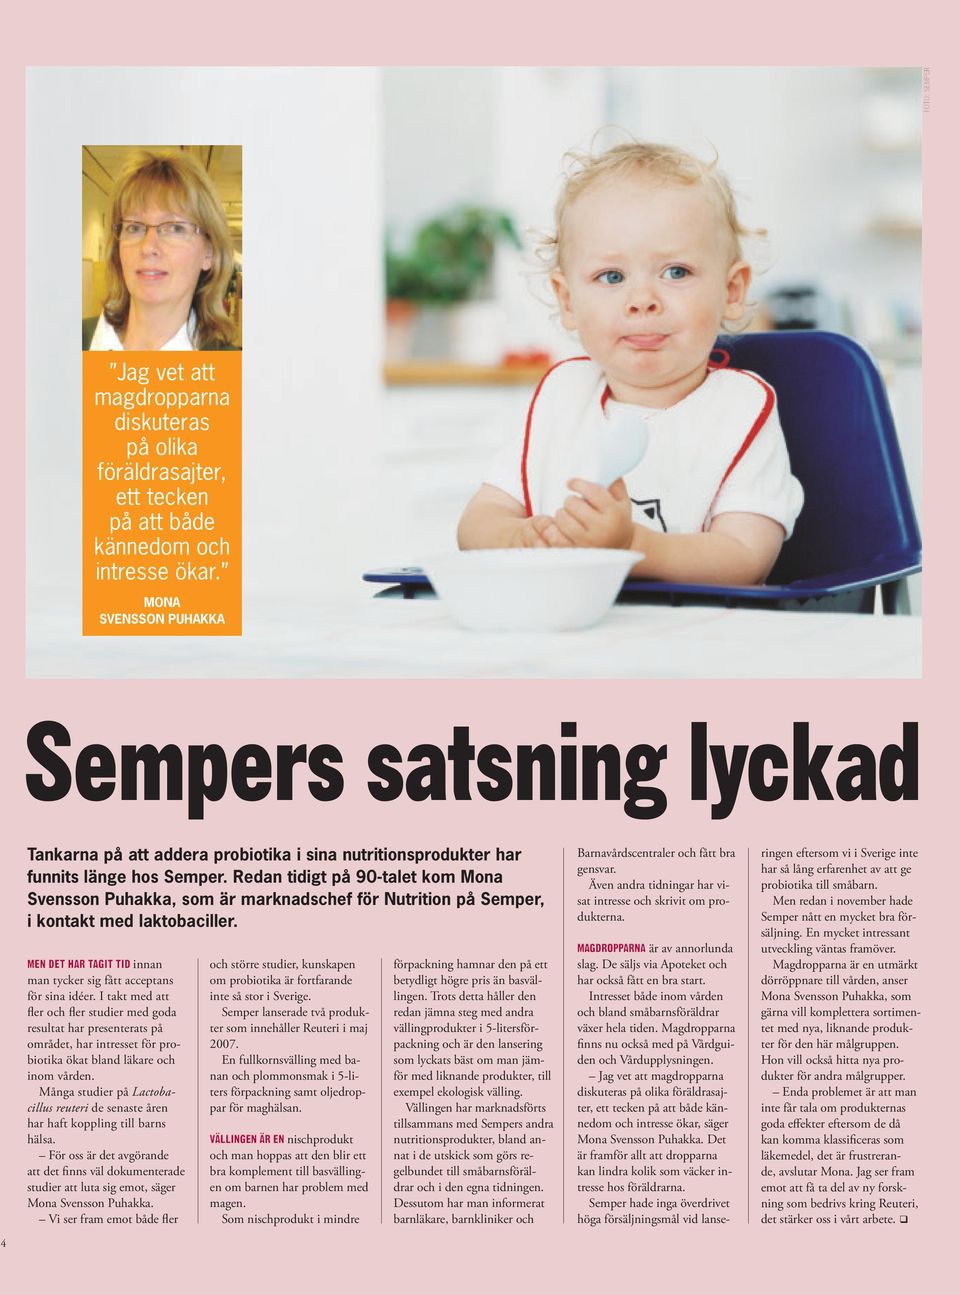 Redan tidigt på 90-talet kom Mona Svensson Puhakka, som är marknadschef för Nutrition på Semper, i kontakt med laktobaciller. Men det har tagit tid innan man tycker sig fått acceptans för sina idéer.